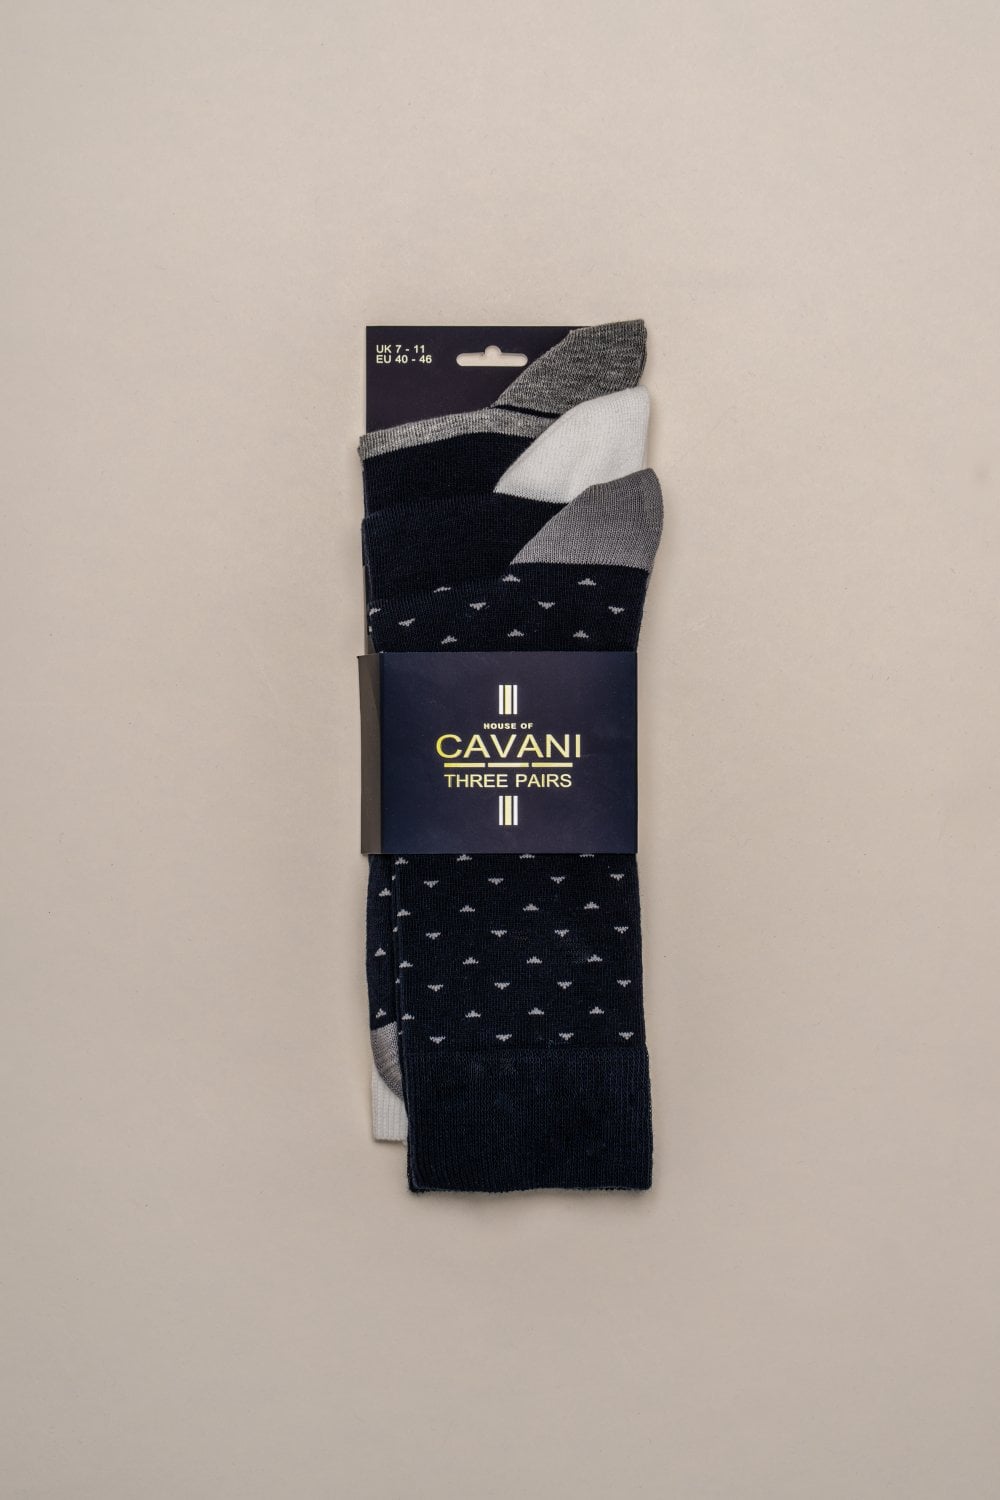 Chaussettes Cavani Ralph 3 paires - Gentleman set